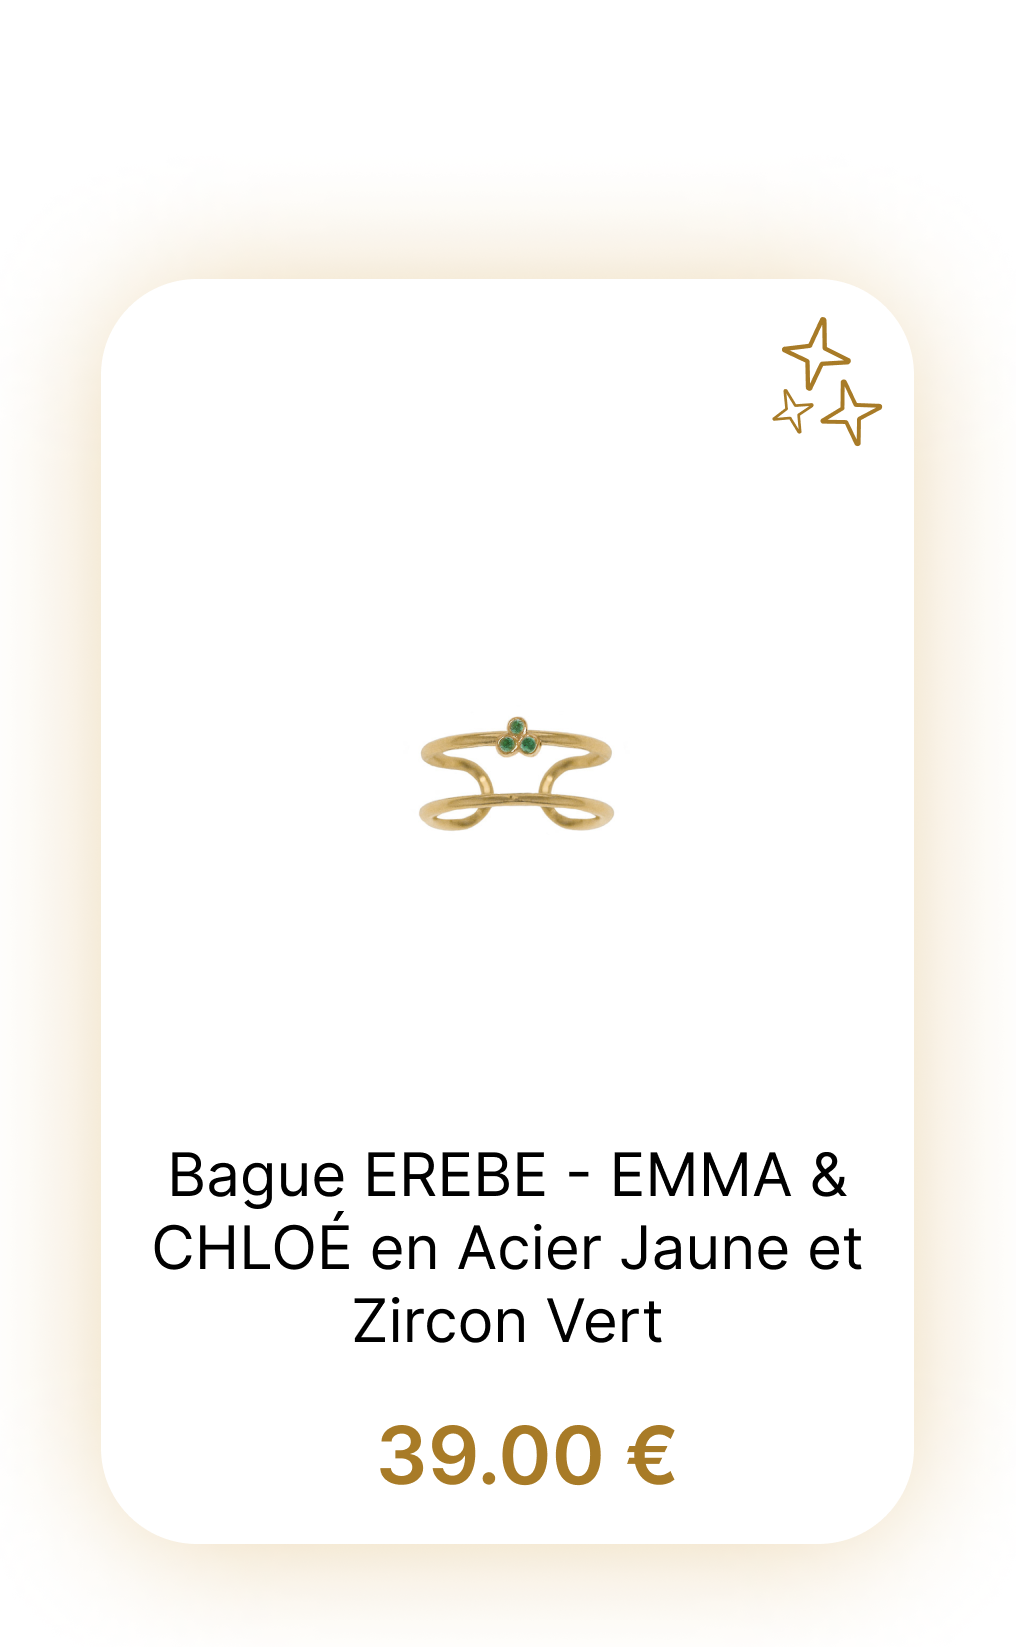 Bague EREBE - EMMA & CHLOÉ en Acier Jaune et Zircon Vert